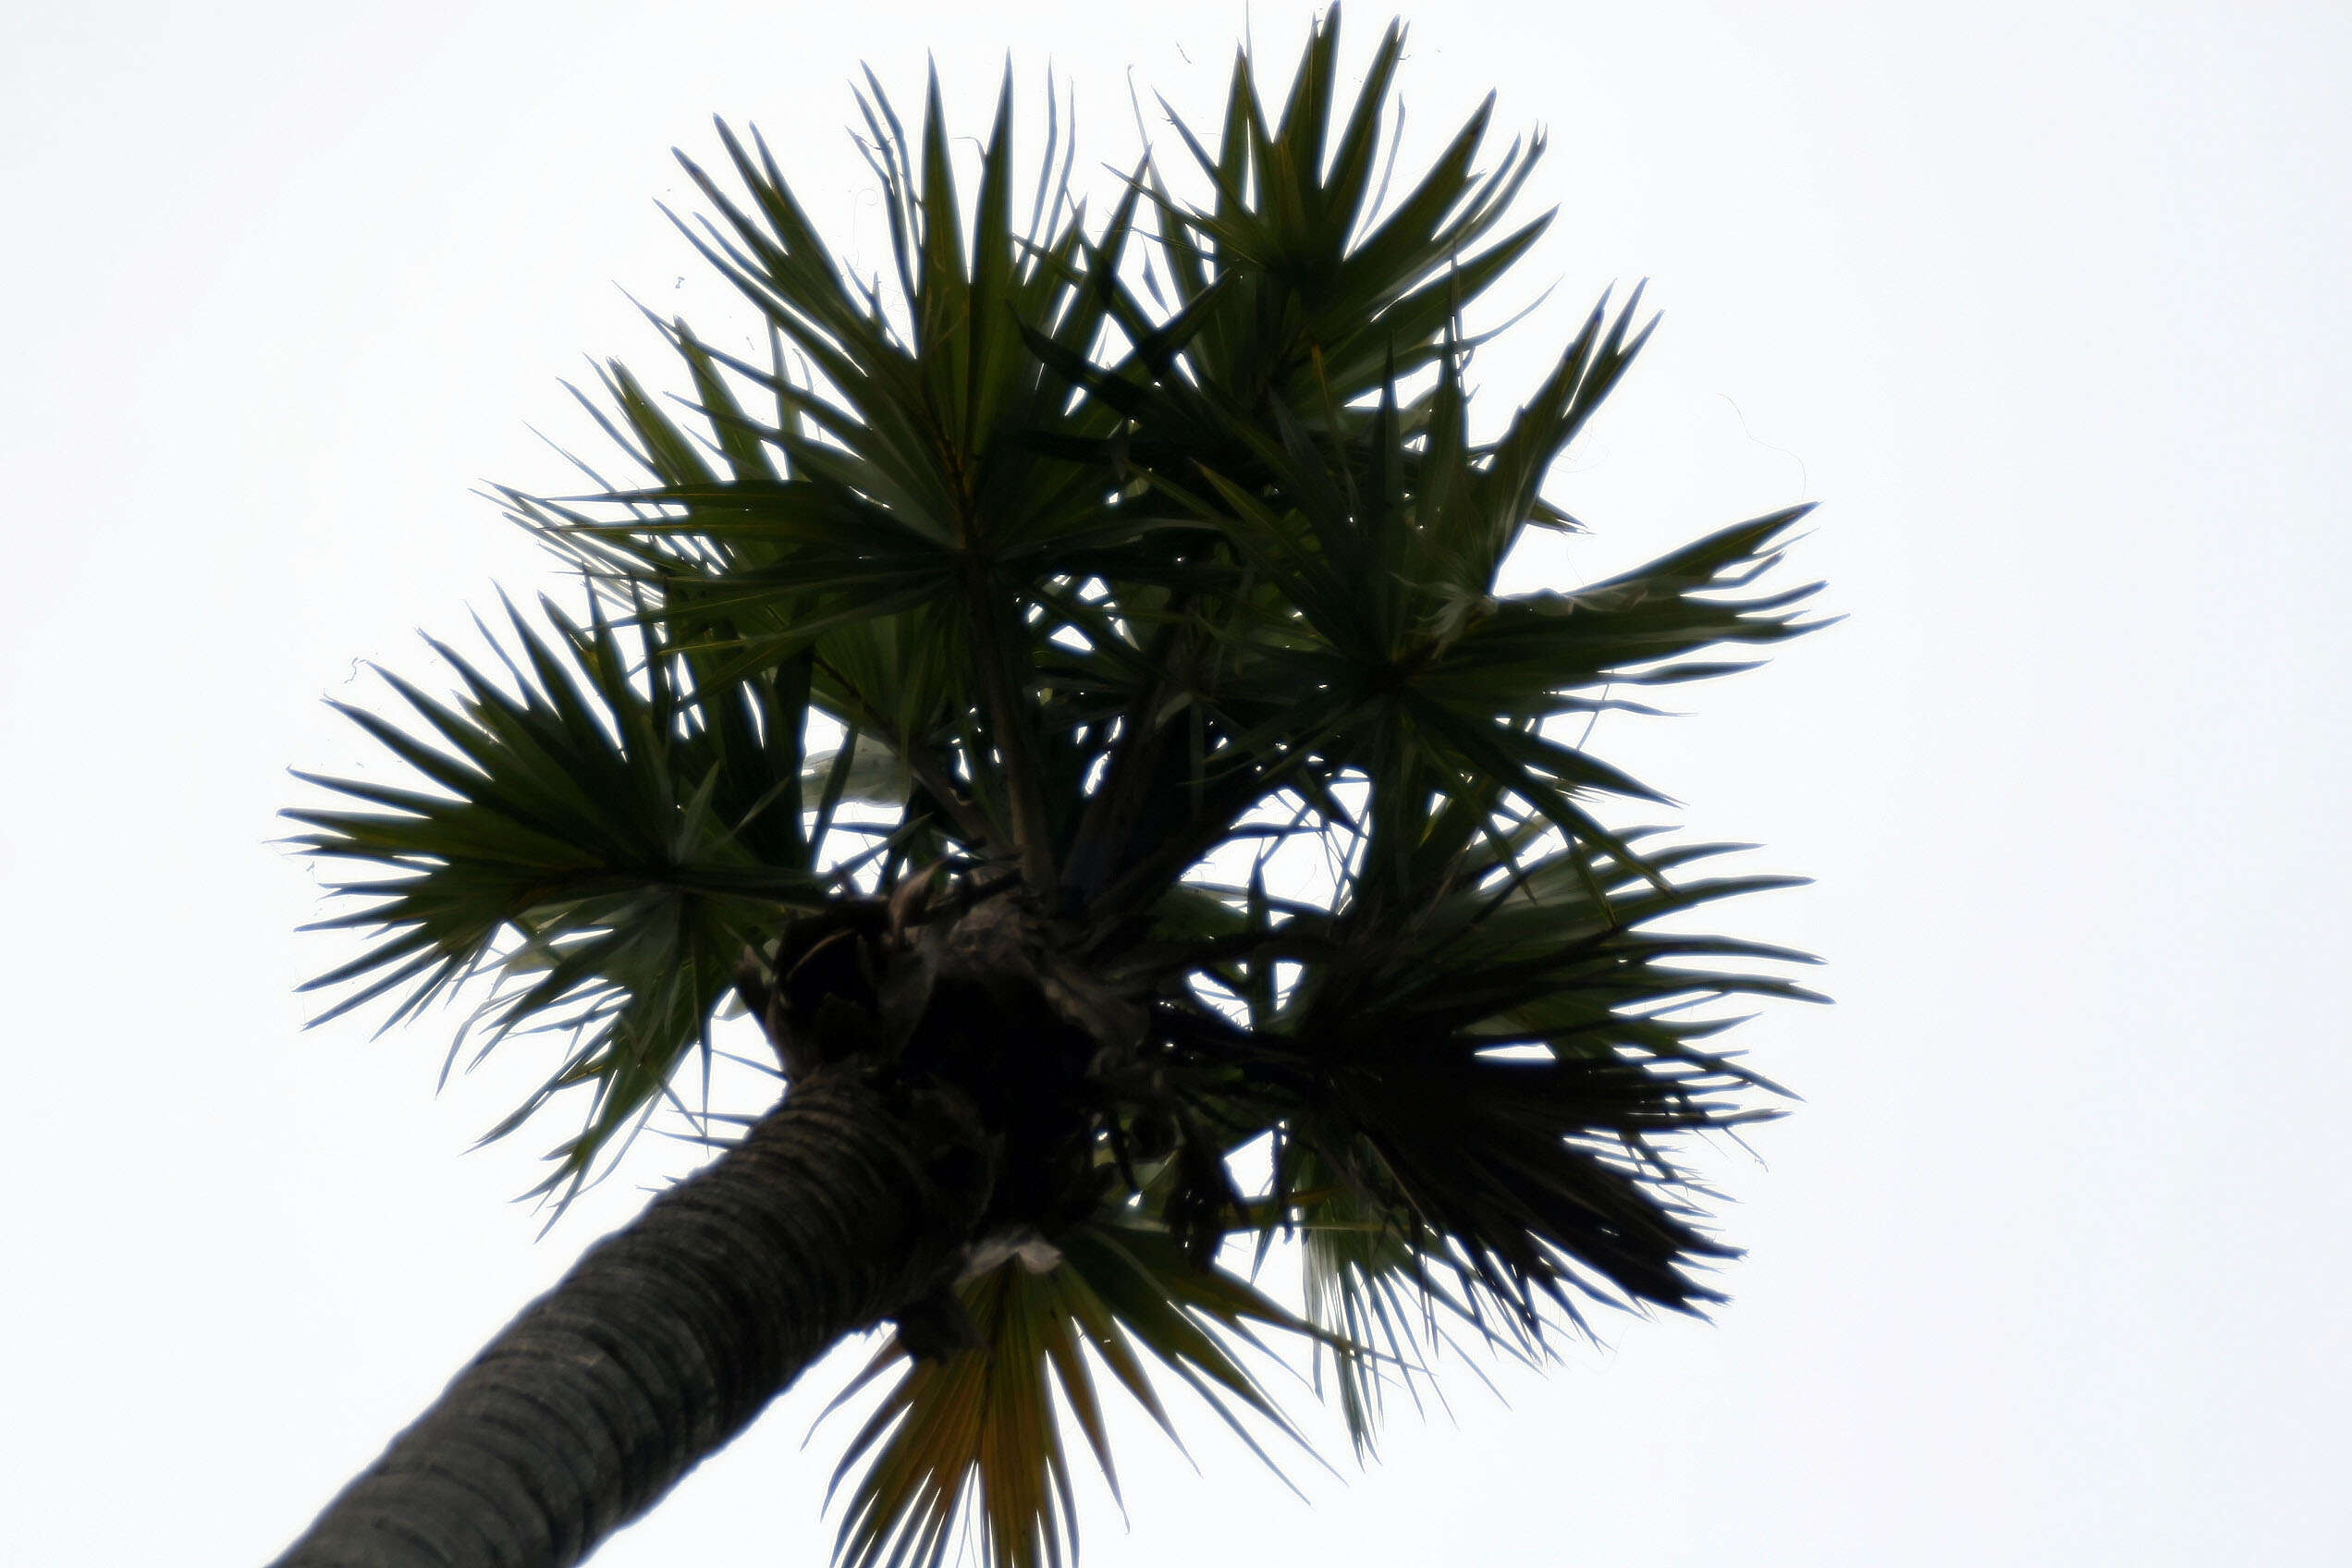 Image of Doum Palm